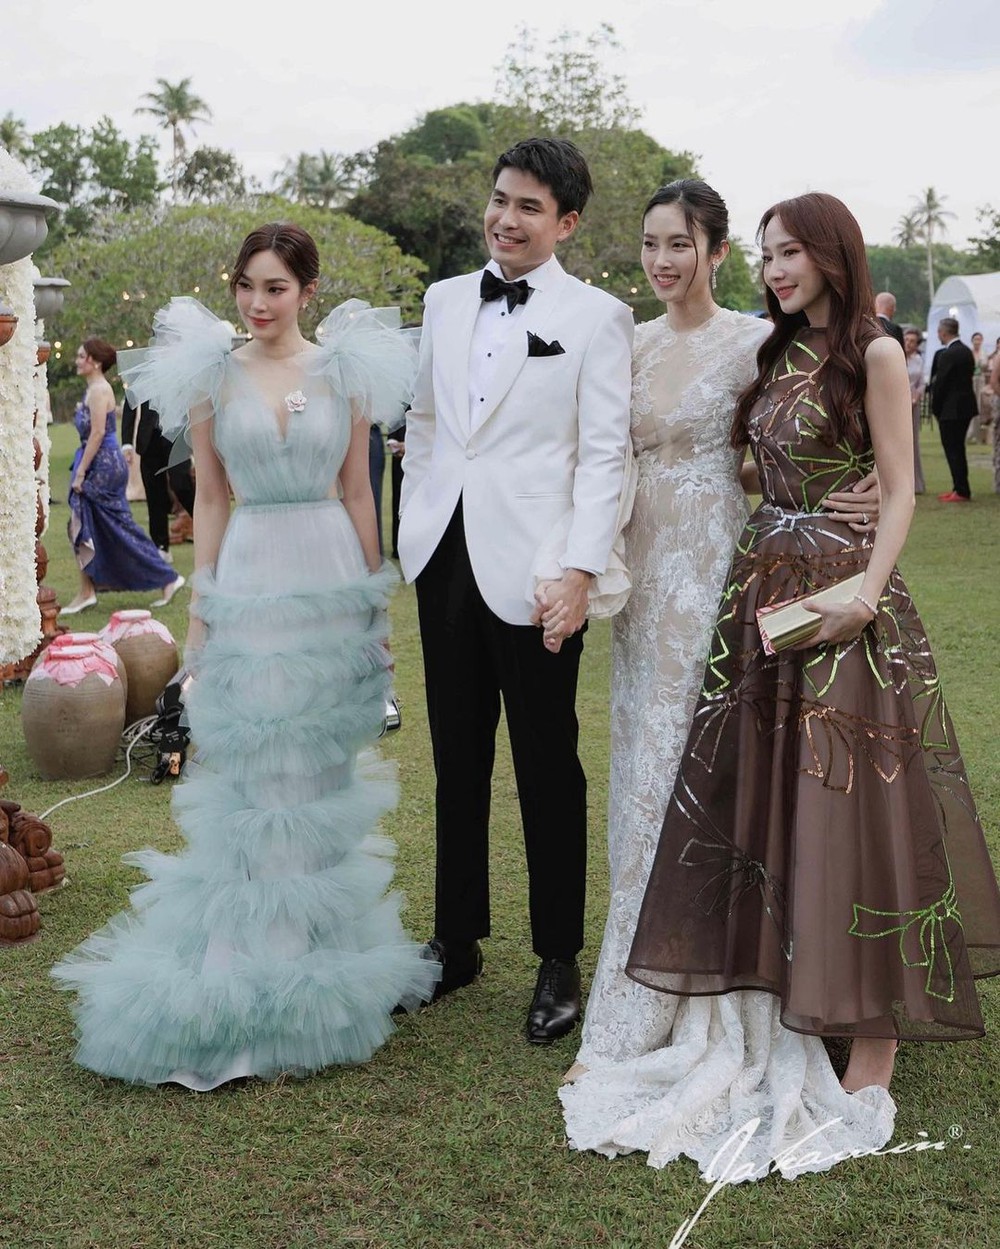 Drama hi hữu ở tiệc cưới Nong Poy: Một nữ diễn viên bị dân tình mỉa mai vì lên đồ “lồng lộn”, lấn át cô dâu - Ảnh 4.